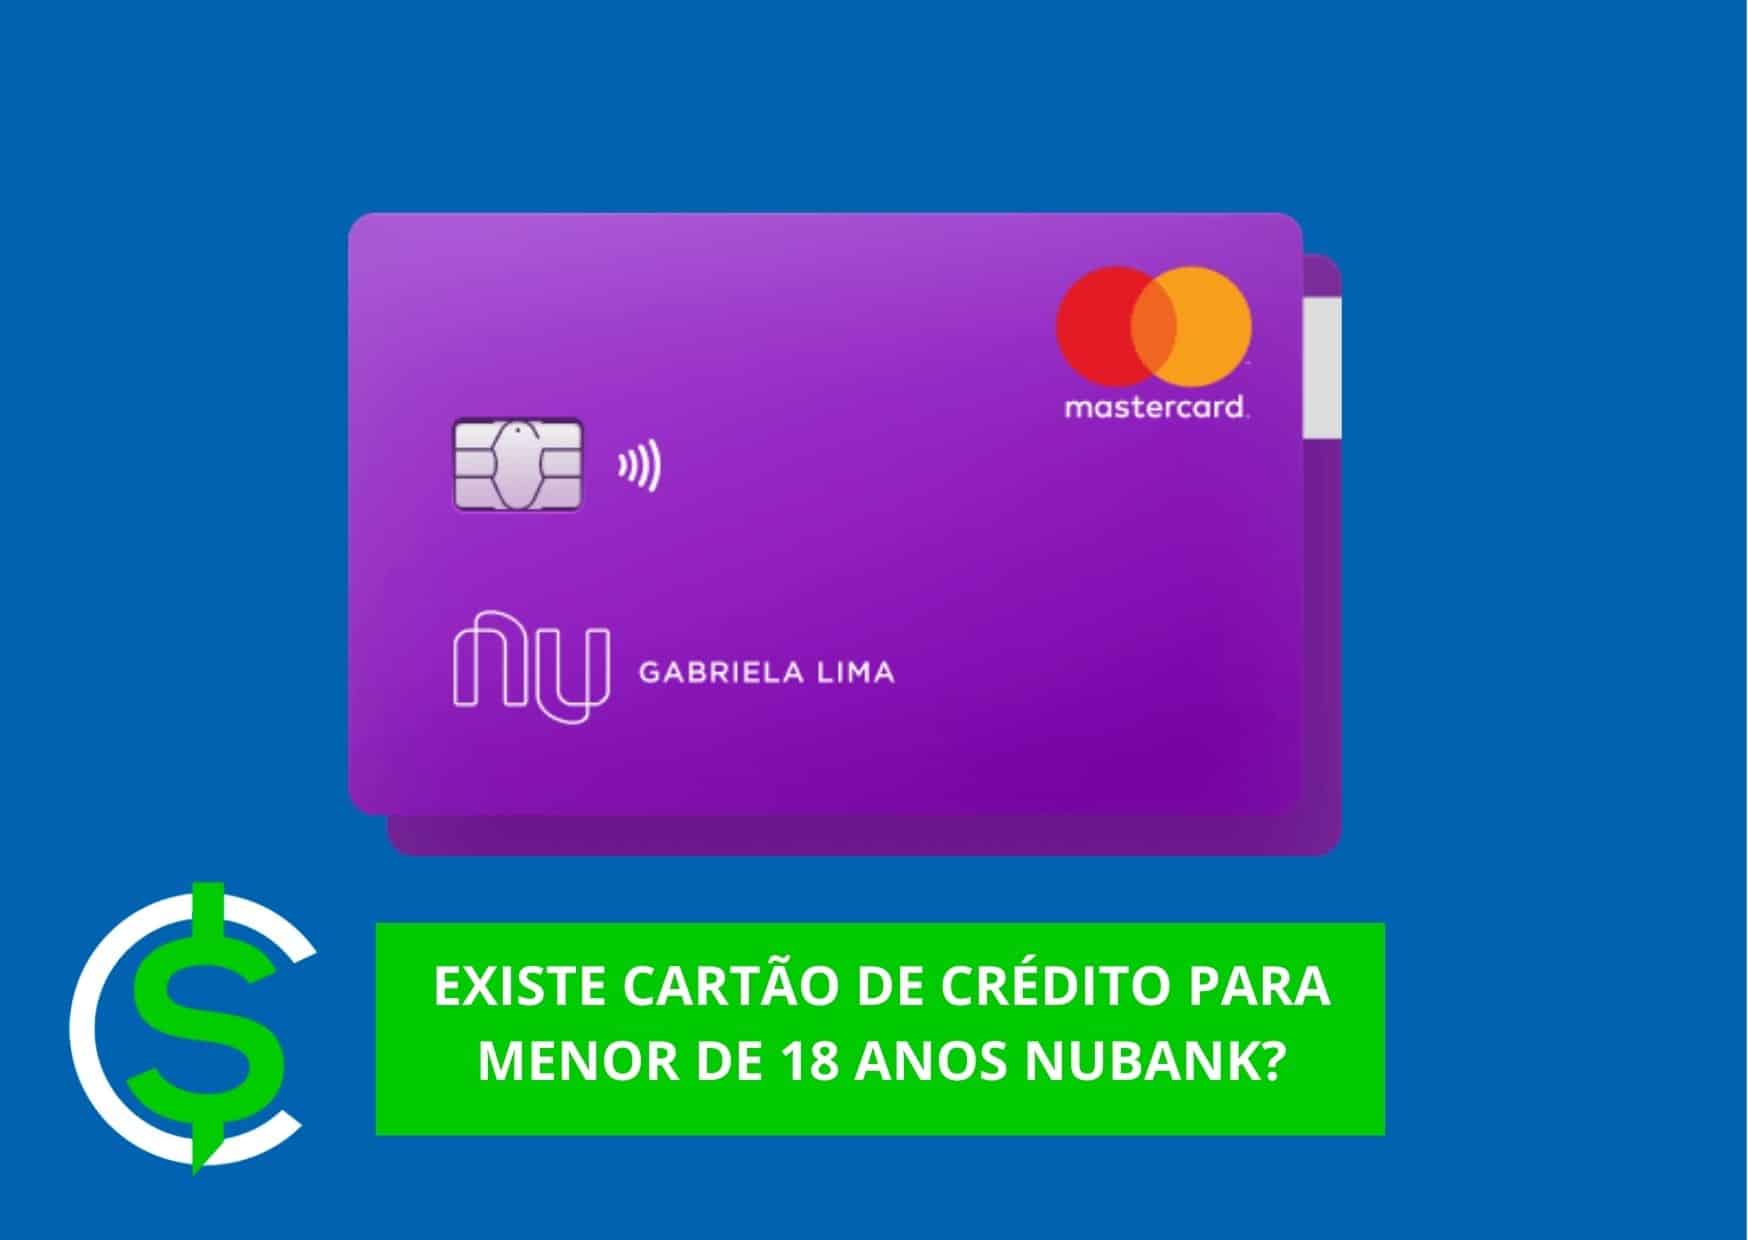 cartão de crédito para menor de 18 anos Nubank